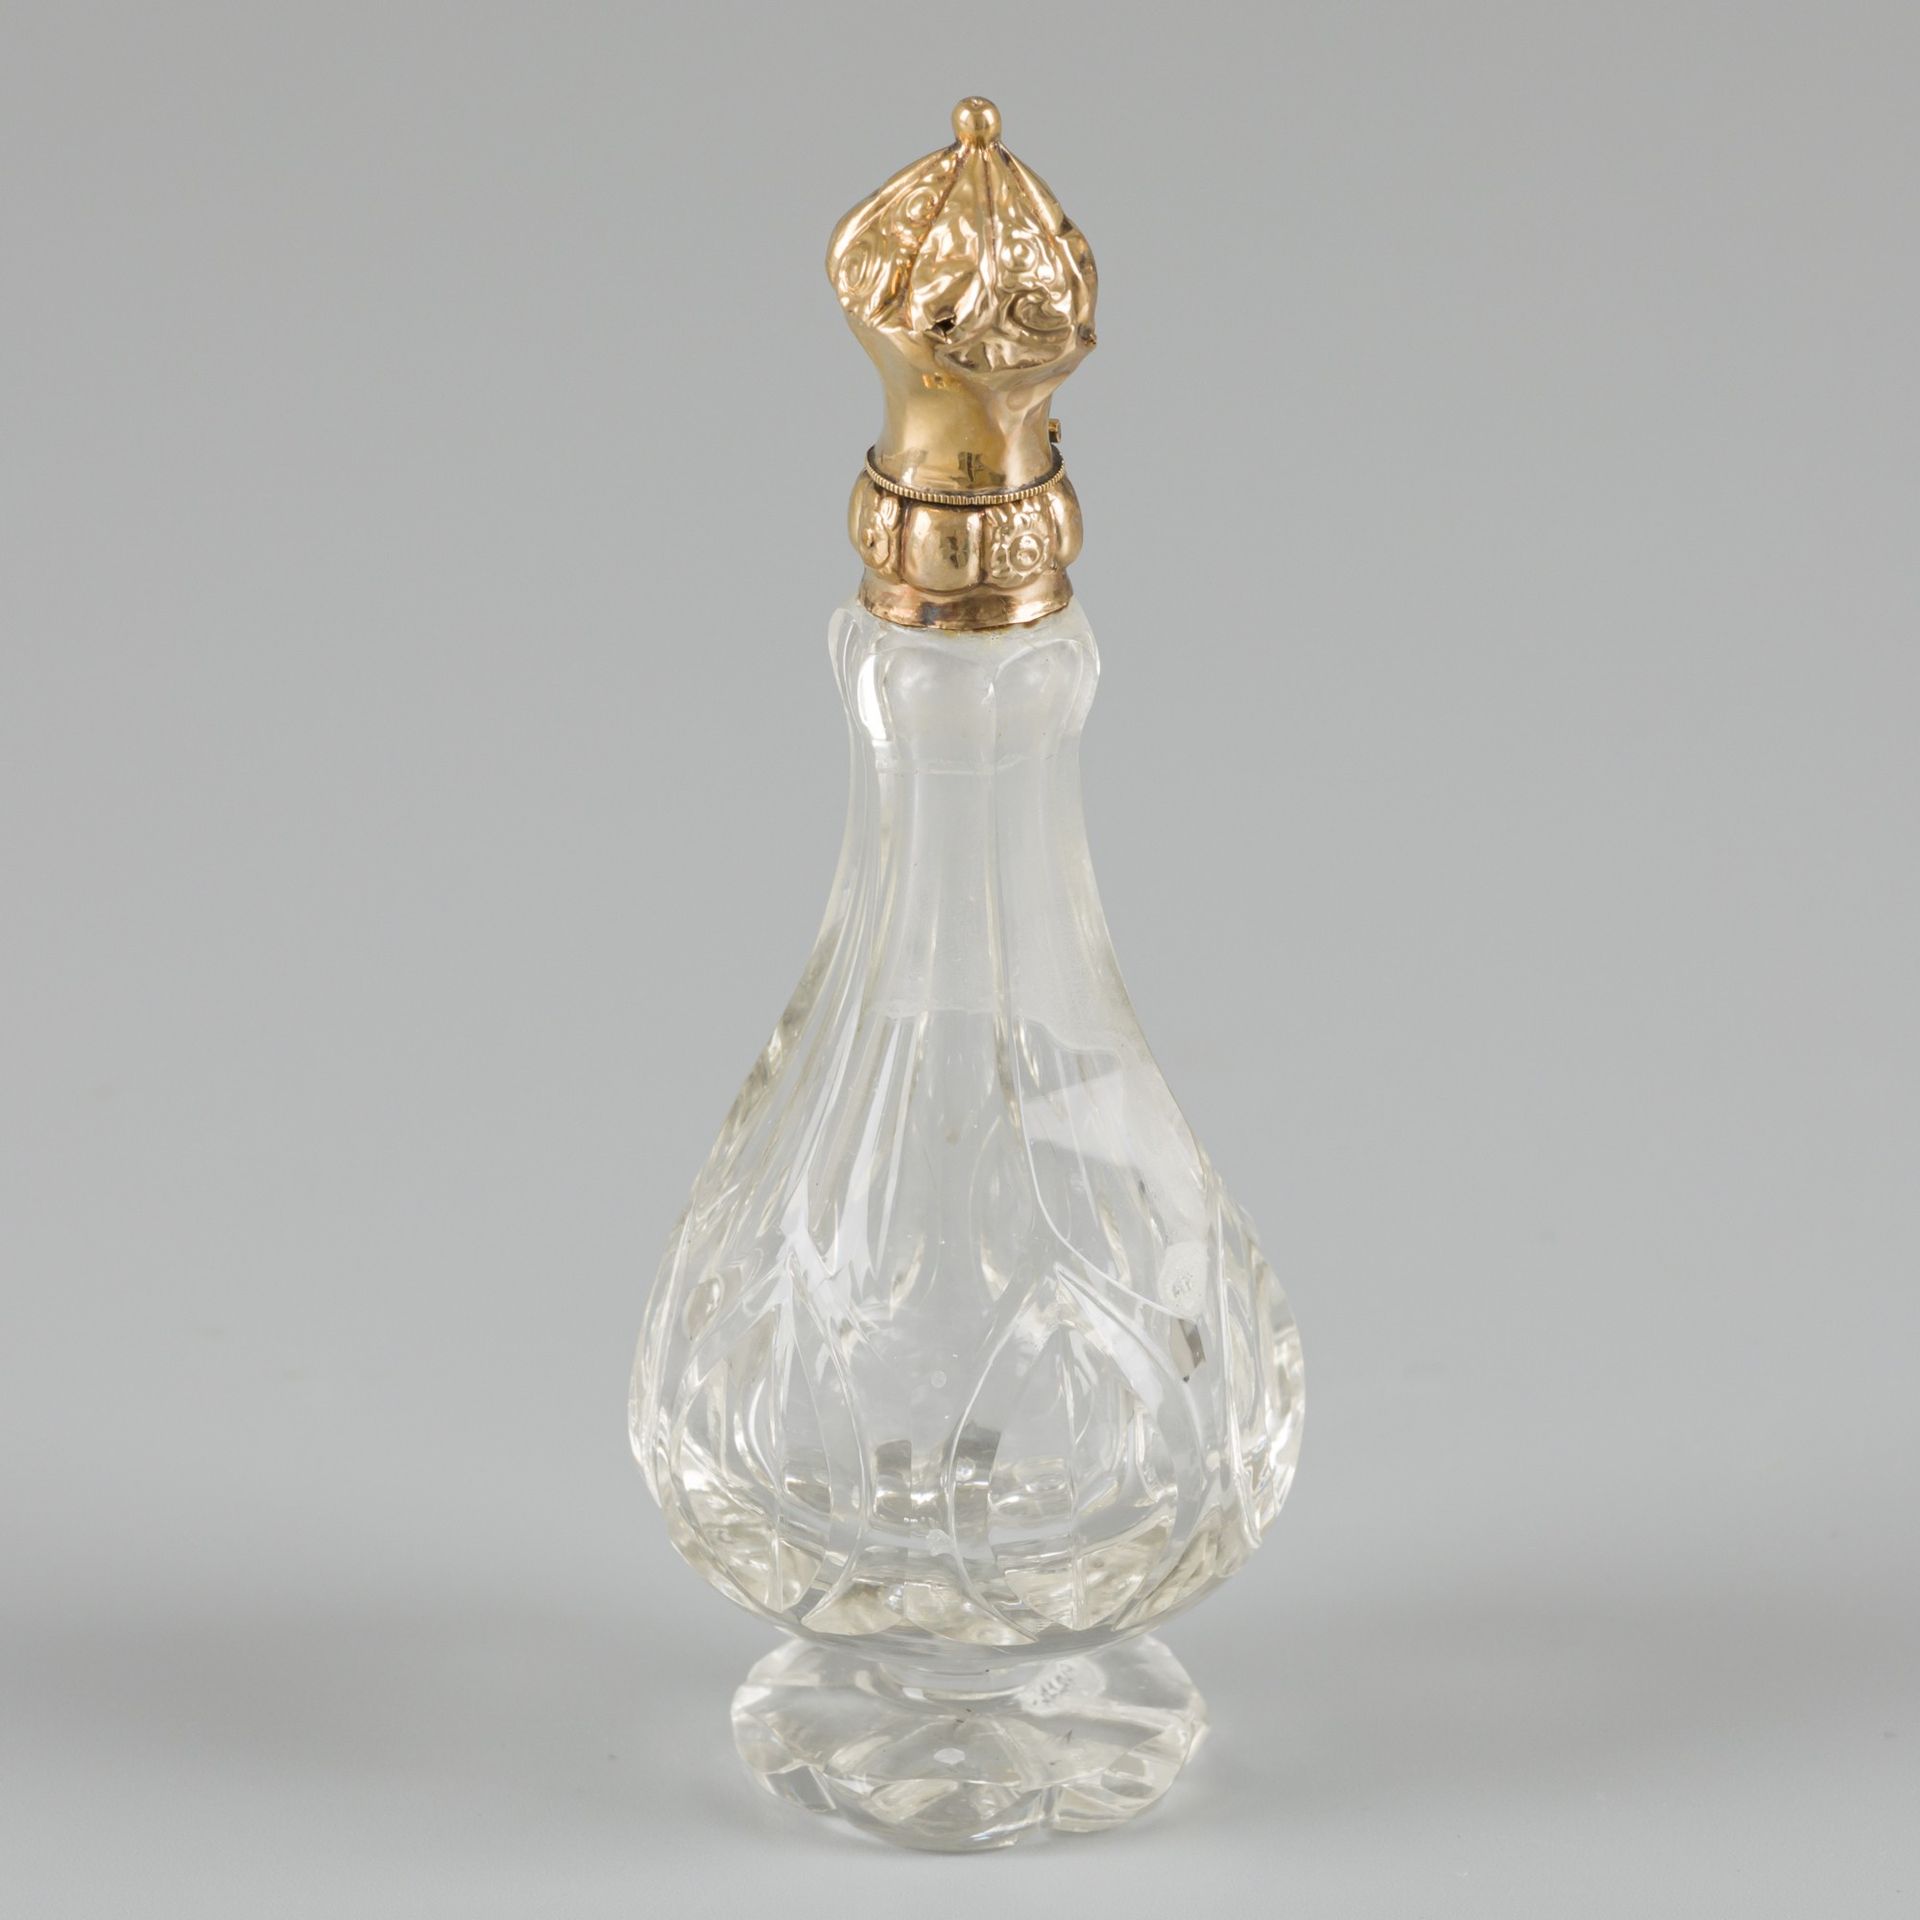 Perfume bottle gold. Geschliffene Kristallglasflasche mit Goldkappe mit geprägte&hellip;